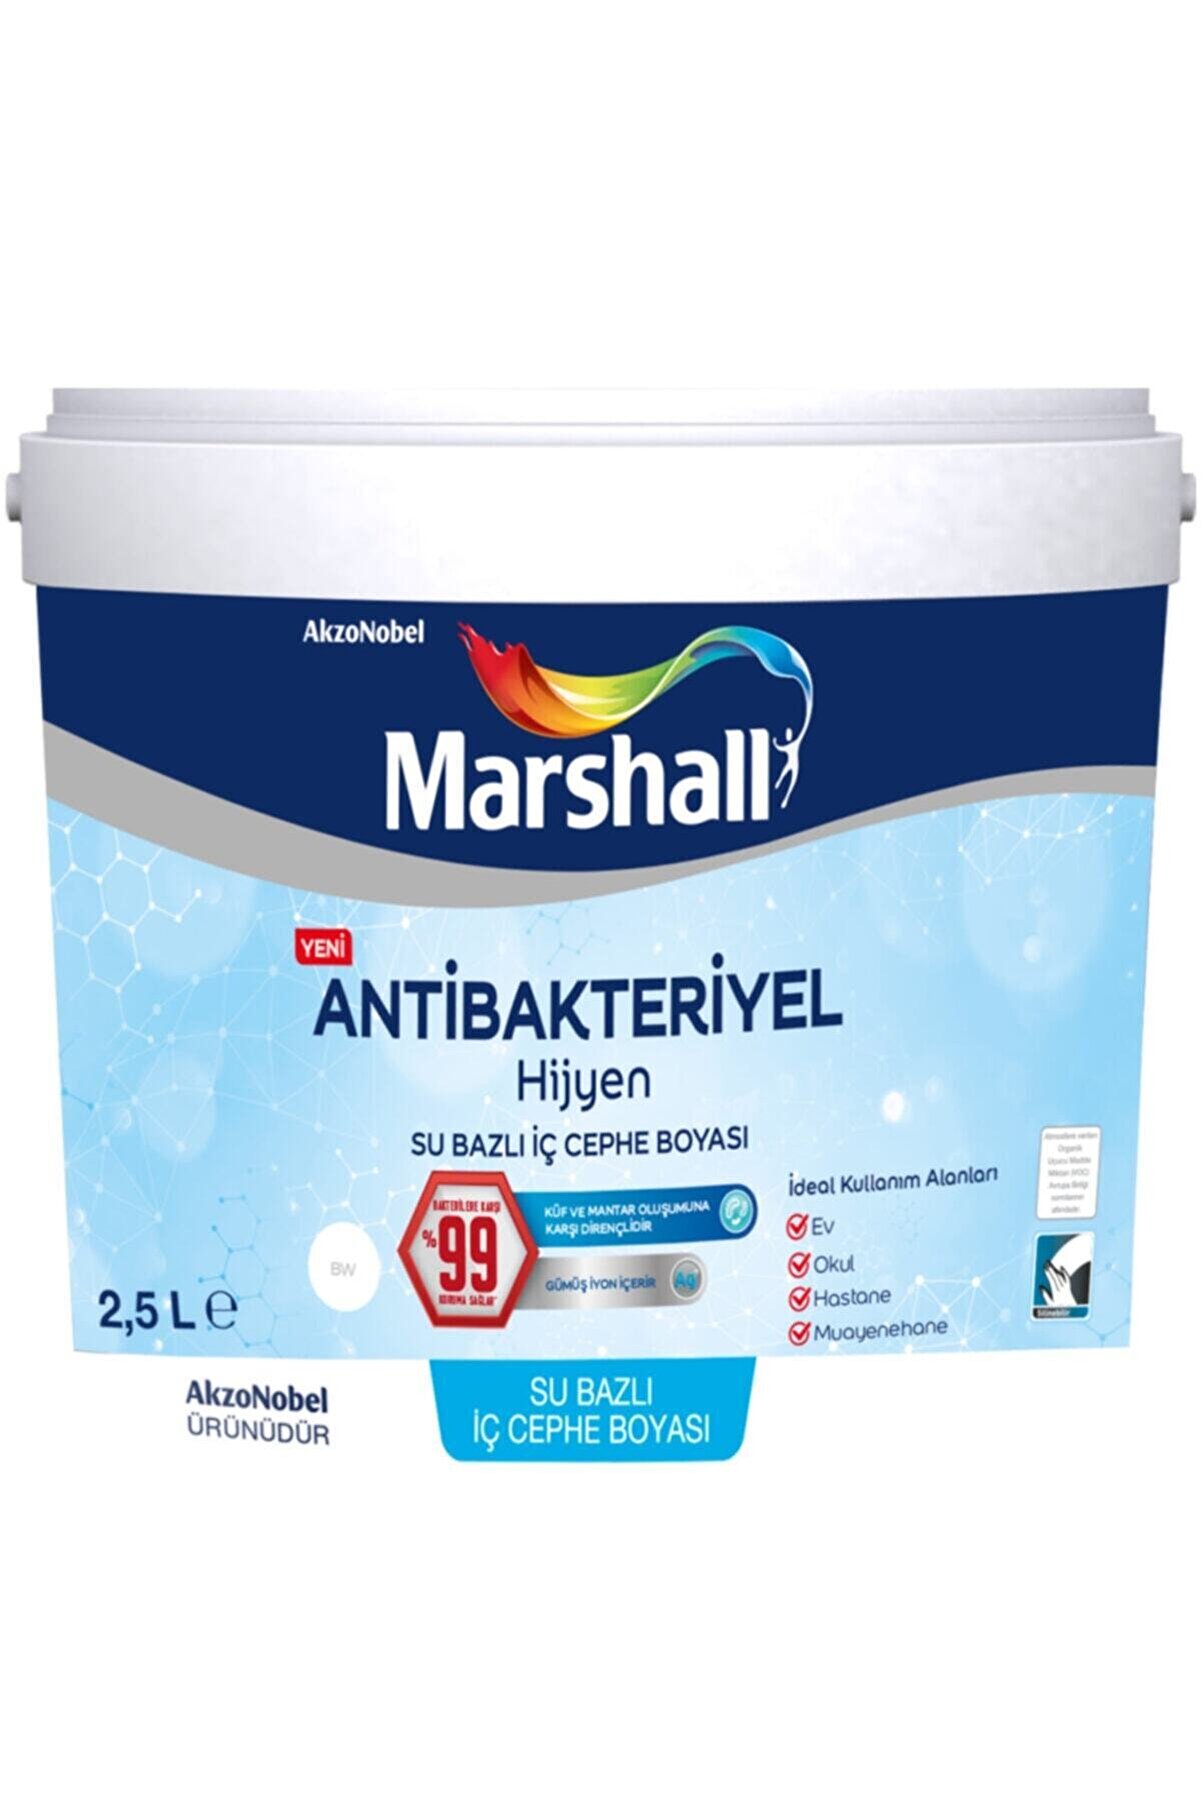 Marshall Antibakteriyel Hijyen Iç Cephe Duvar Boyası 2,5 Lt Martı